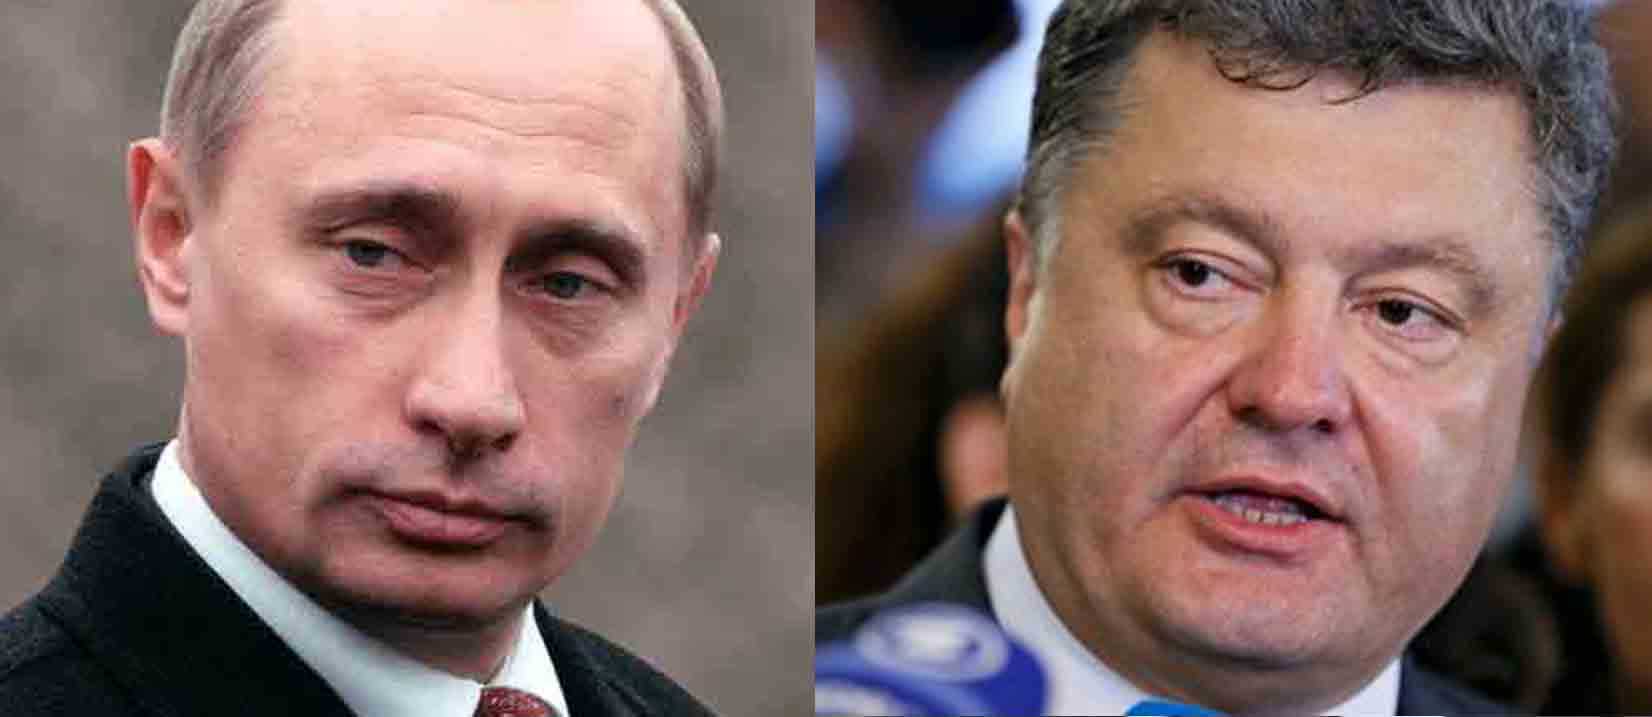 Poroshenko dopo colloqui con Putin: "Raggiungere prima possibile tregua  bilaterale"